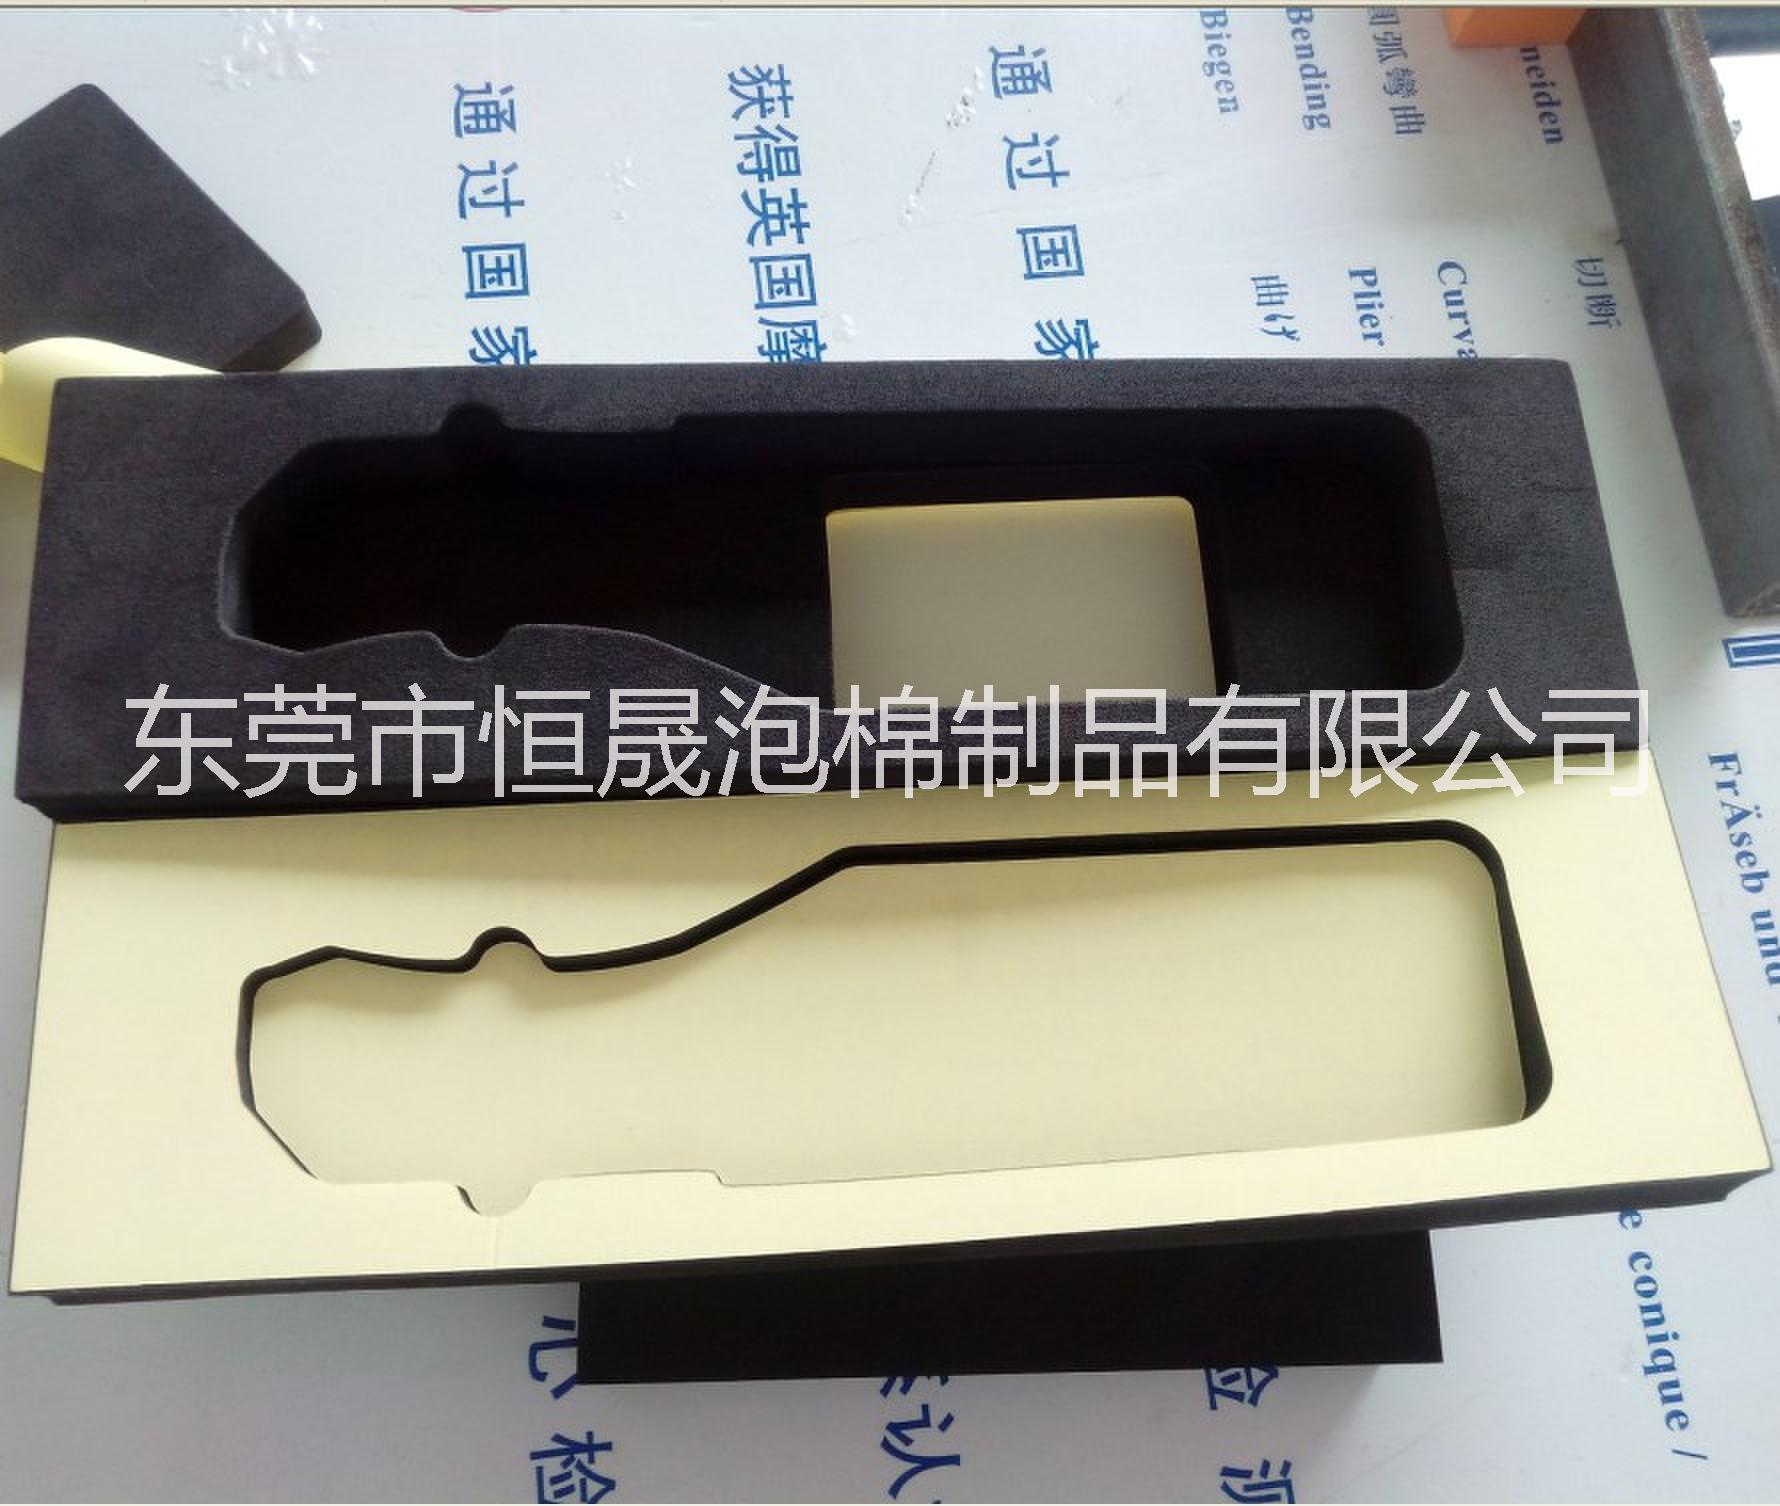 中国EVA产品 eva内衬 eva材料 eva片材 海绵内衬 海绵材料